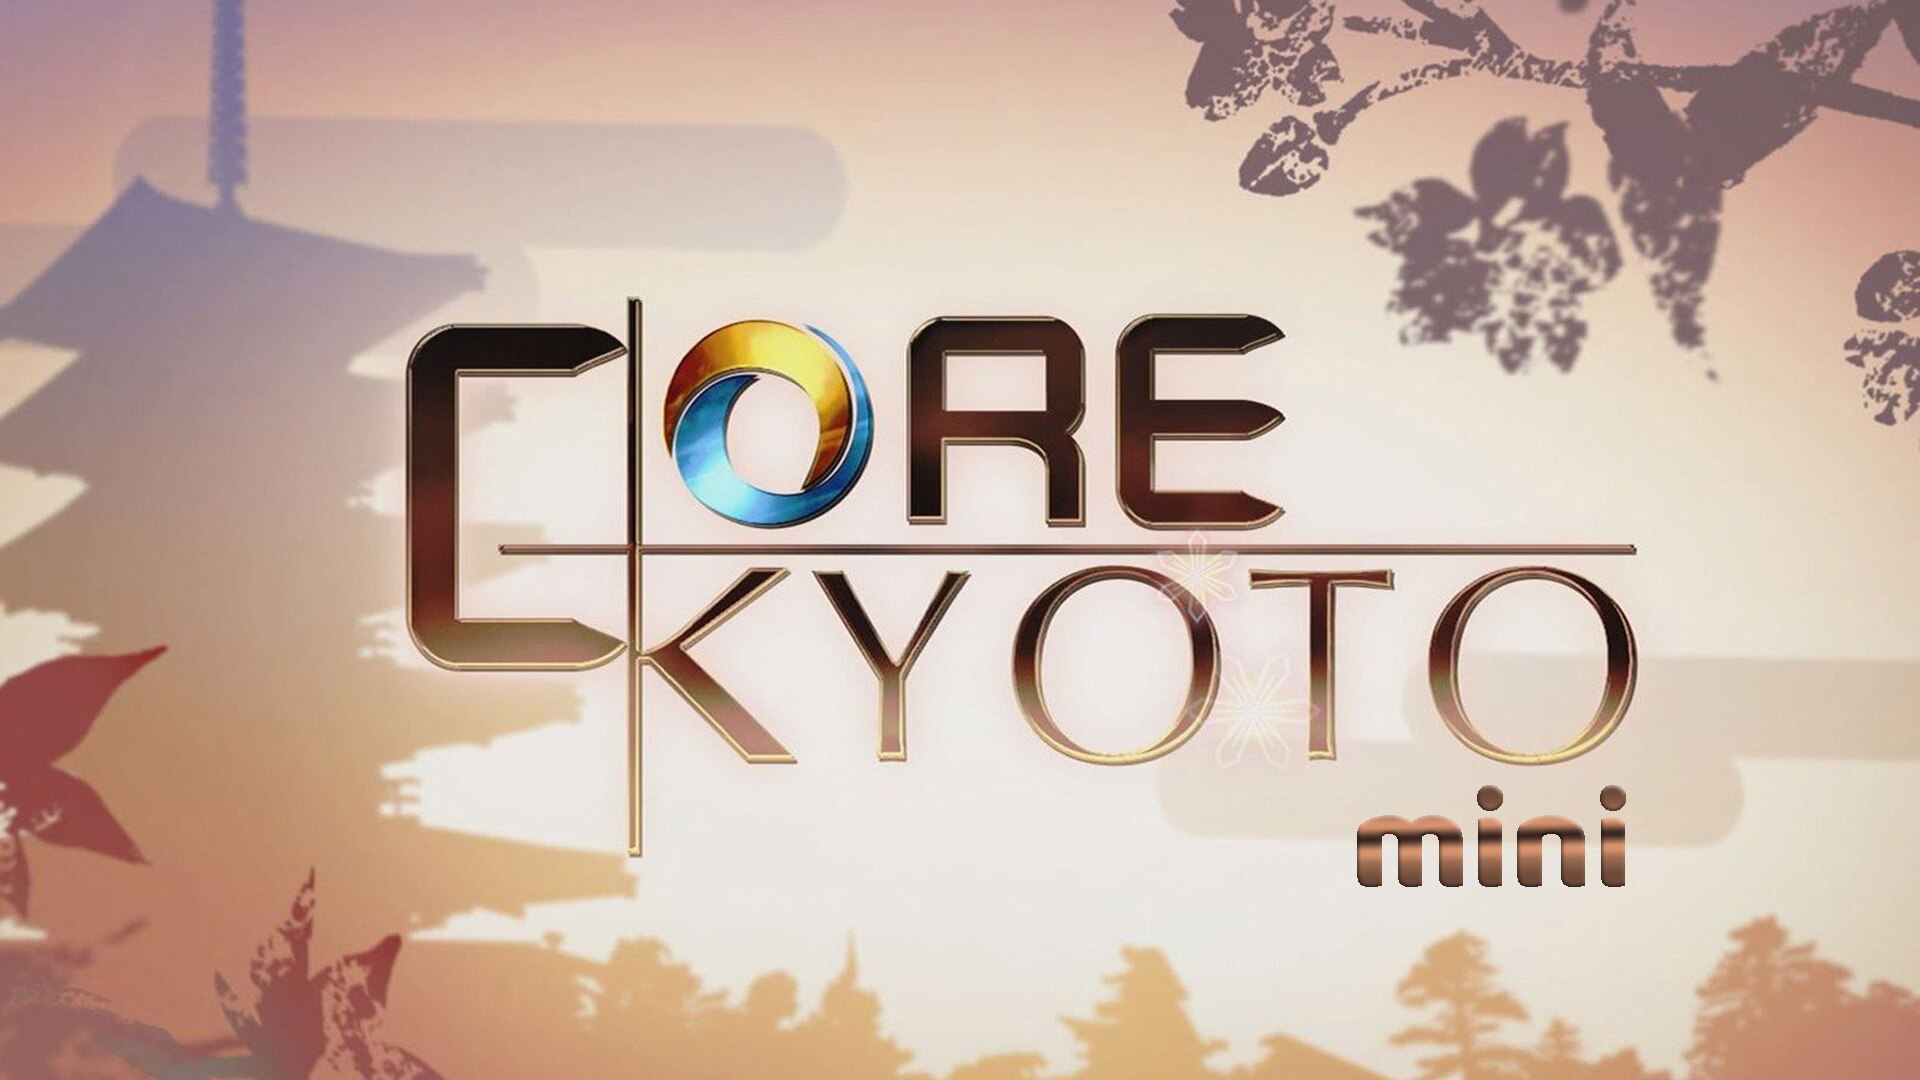 Core Kyoto Mini